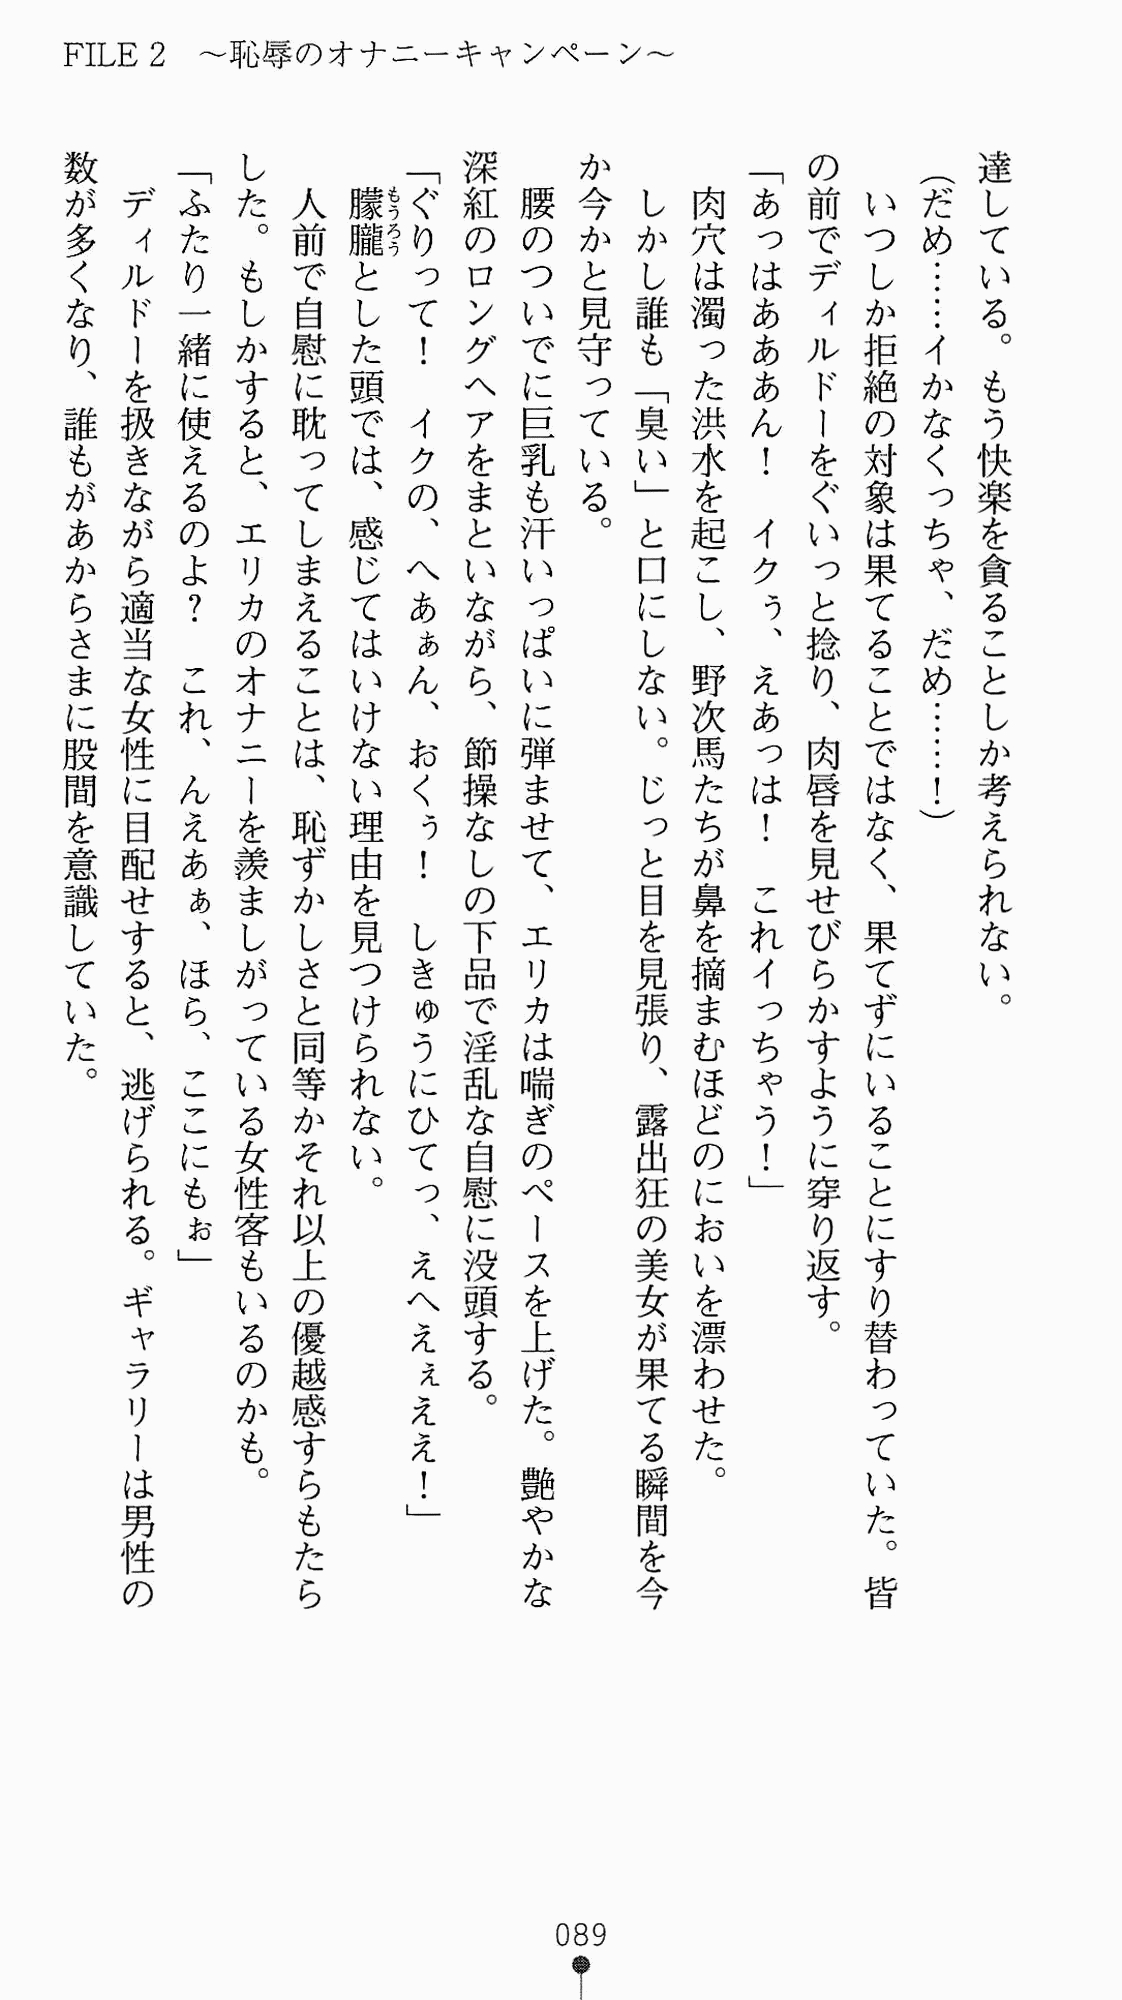 [Kagura Youko, Takahama Tarou] Shiritsu Tantei Takasuga Erika no Jikenbo 2 - Chijouha AV Satsuei 24-ji 104